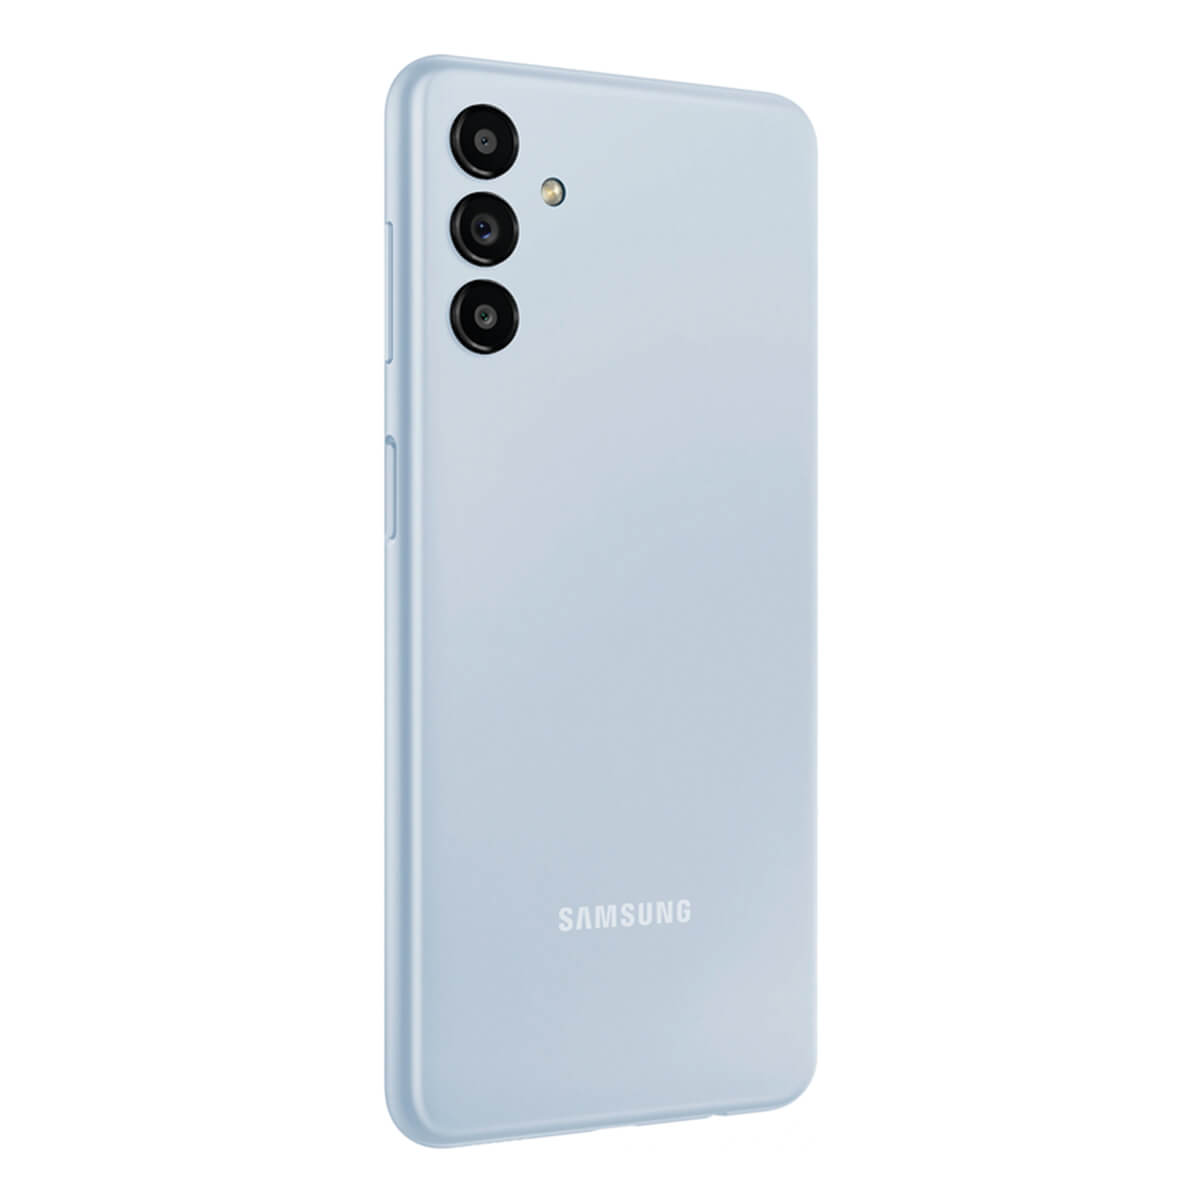 Galaxy DS 128 SAMSUNG Dual light SIM blue A13 GB 5G Blau 128GB